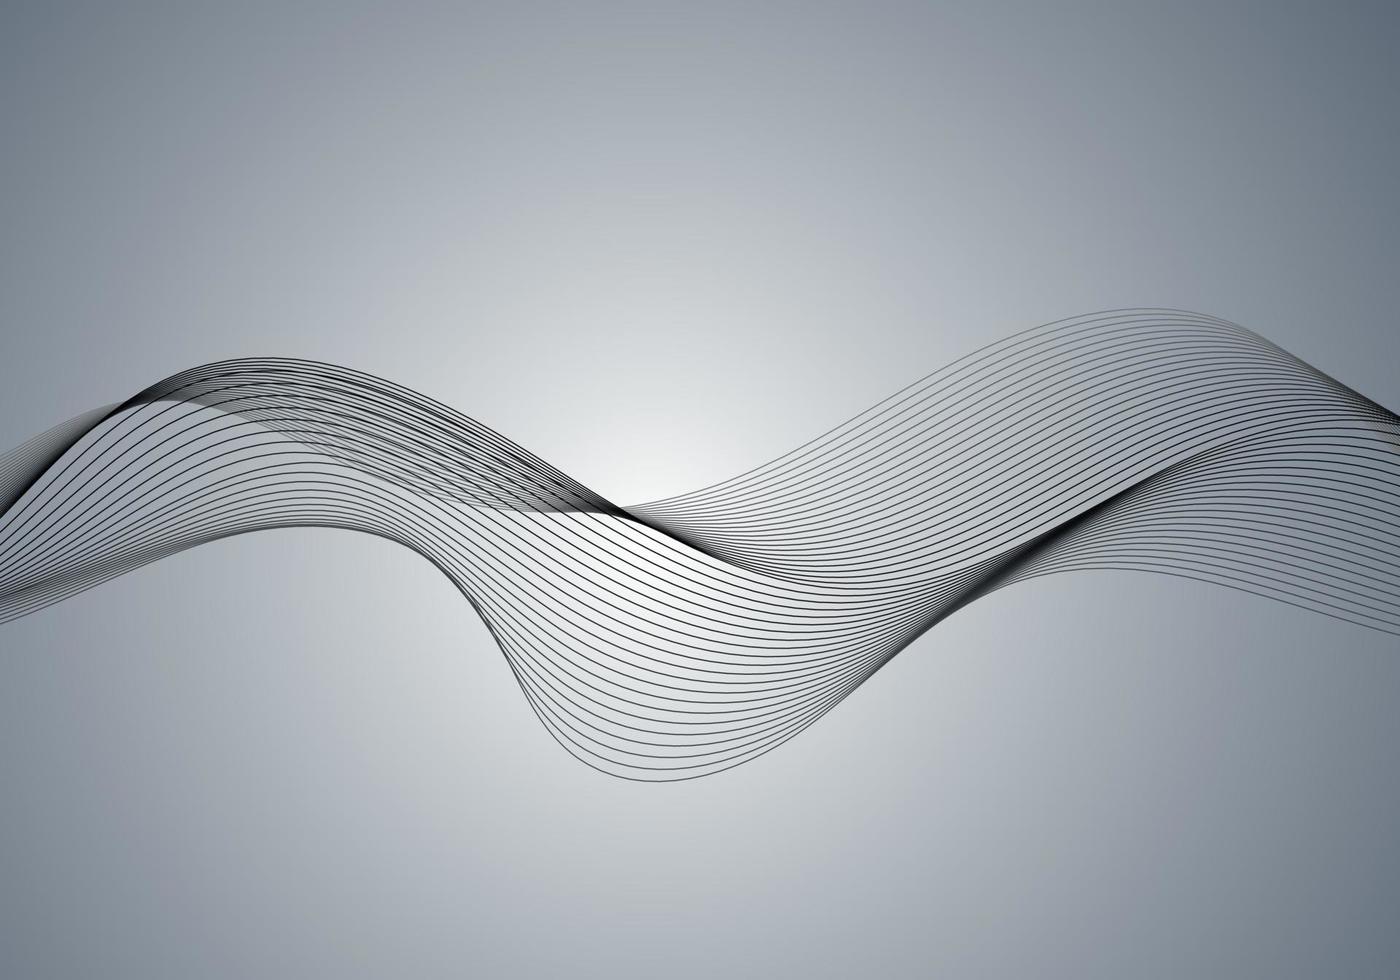 diseño de onda de fondo abstracto de arte óptico en blanco y negro vector